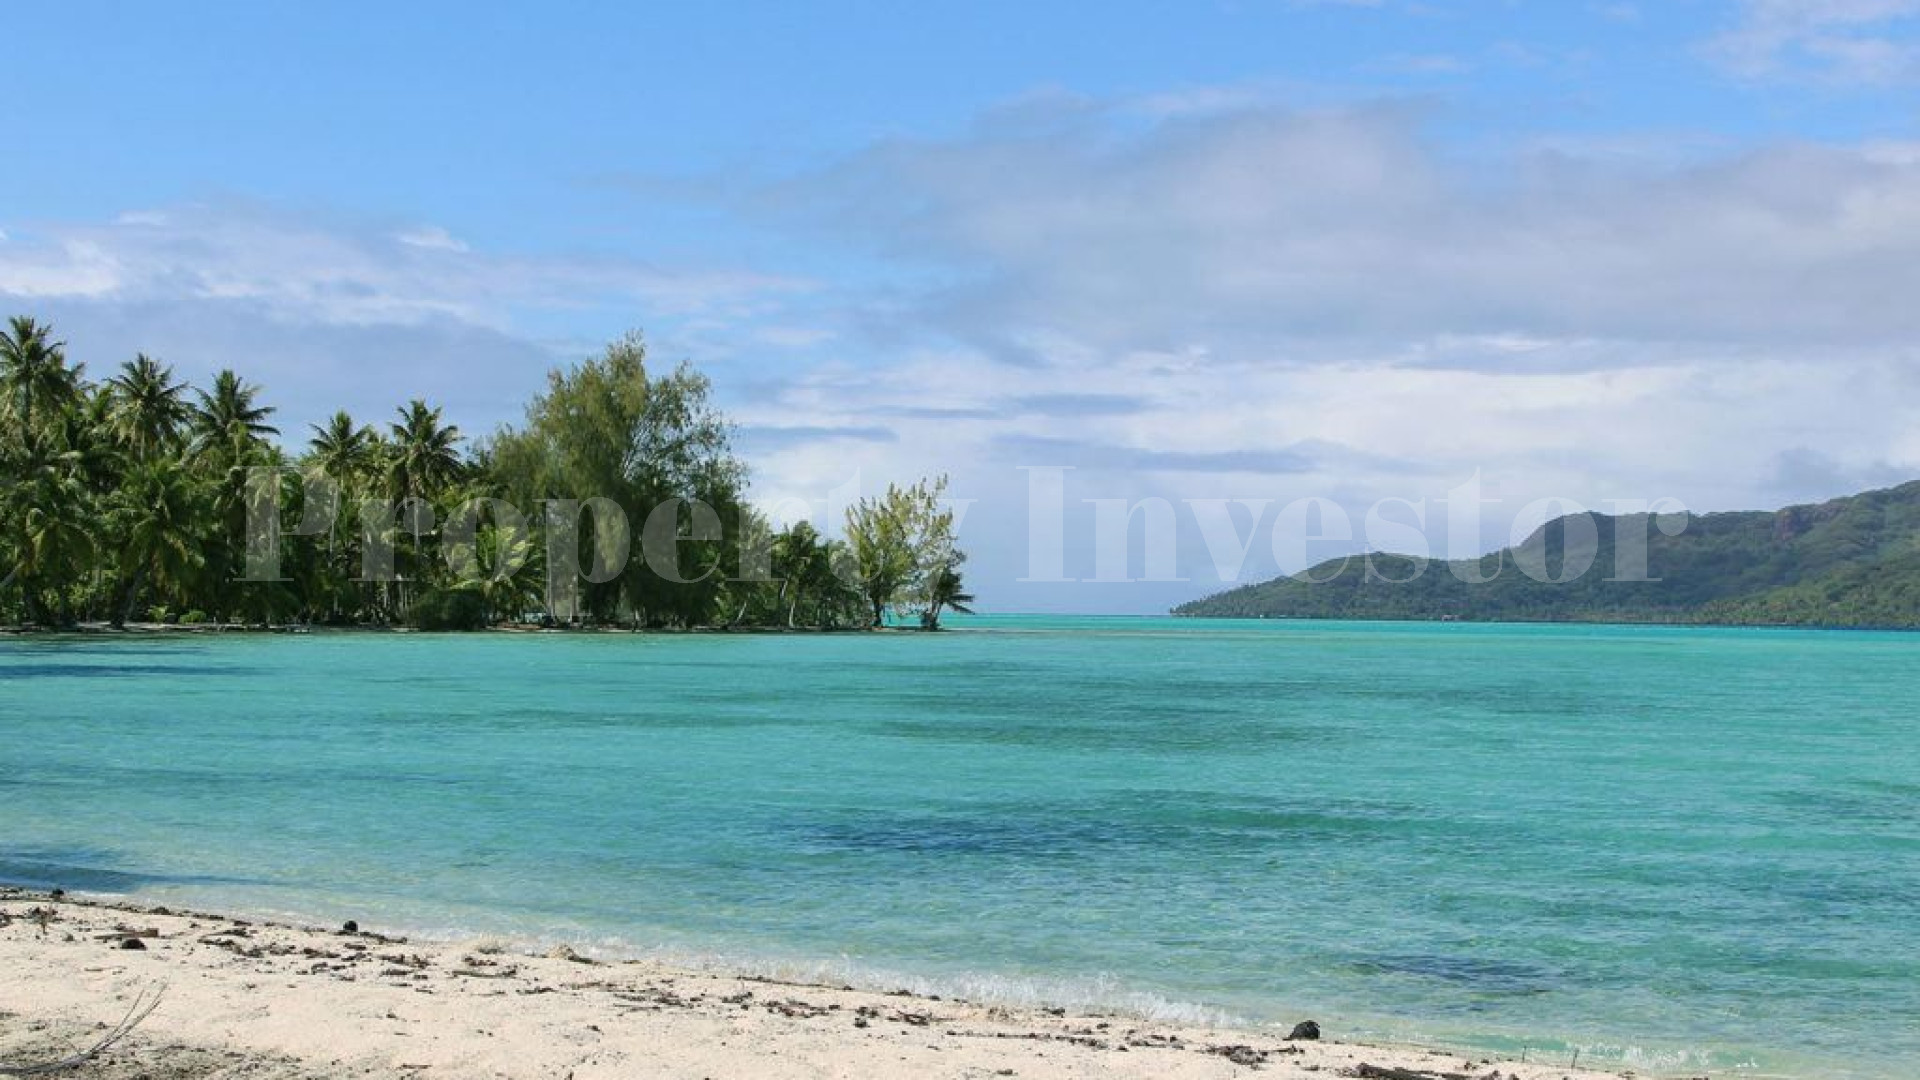 Продаётся живописный частный дикий остров 7,12 га во Французской Полинезии